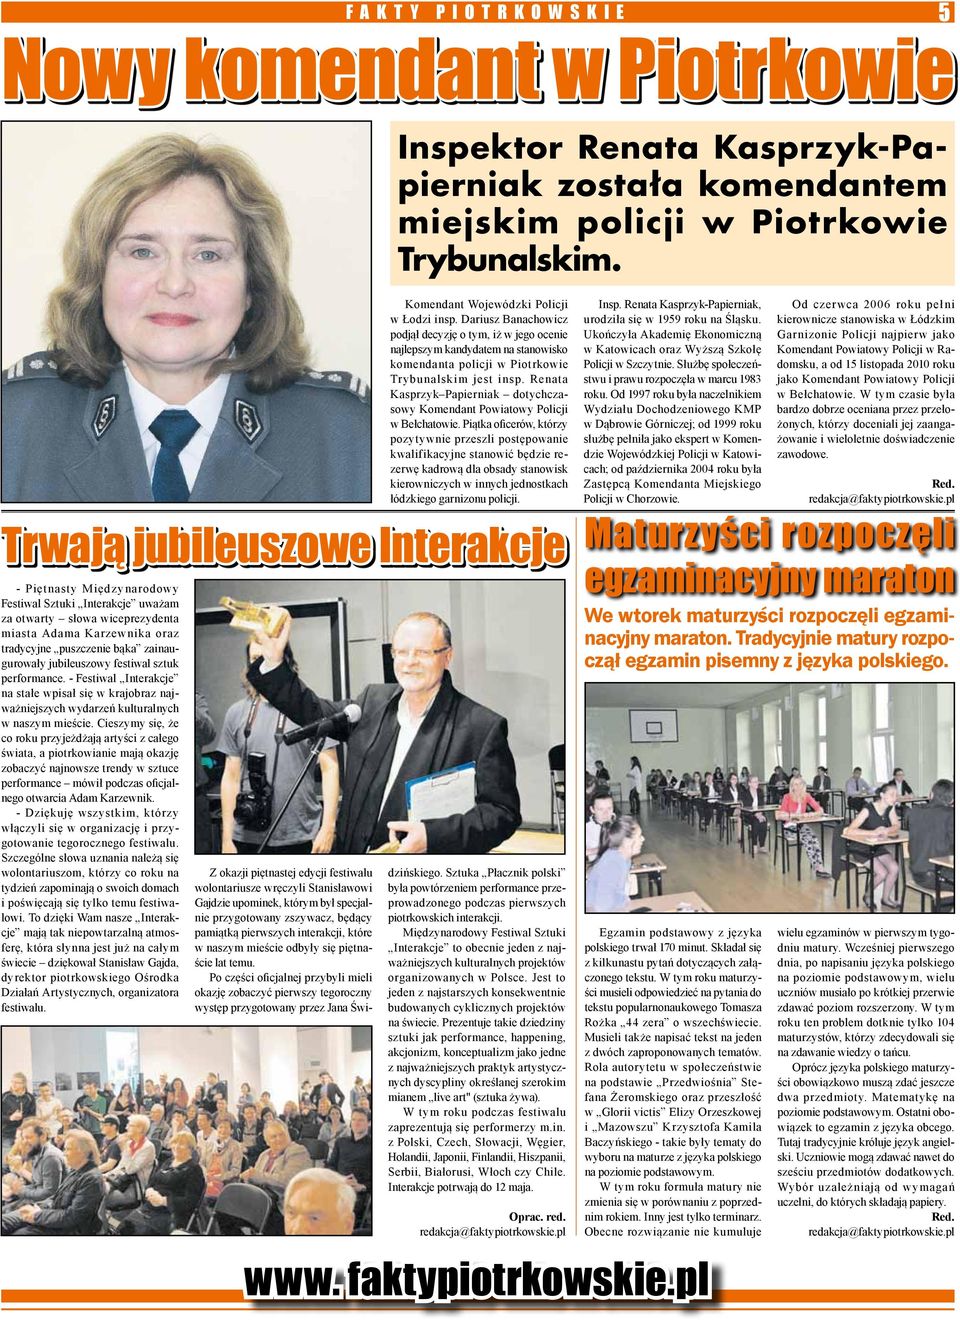 Renata Kasprzyk Papierniak dotychczasowy Komendant Powiatowy Policji w Bełchatowie.